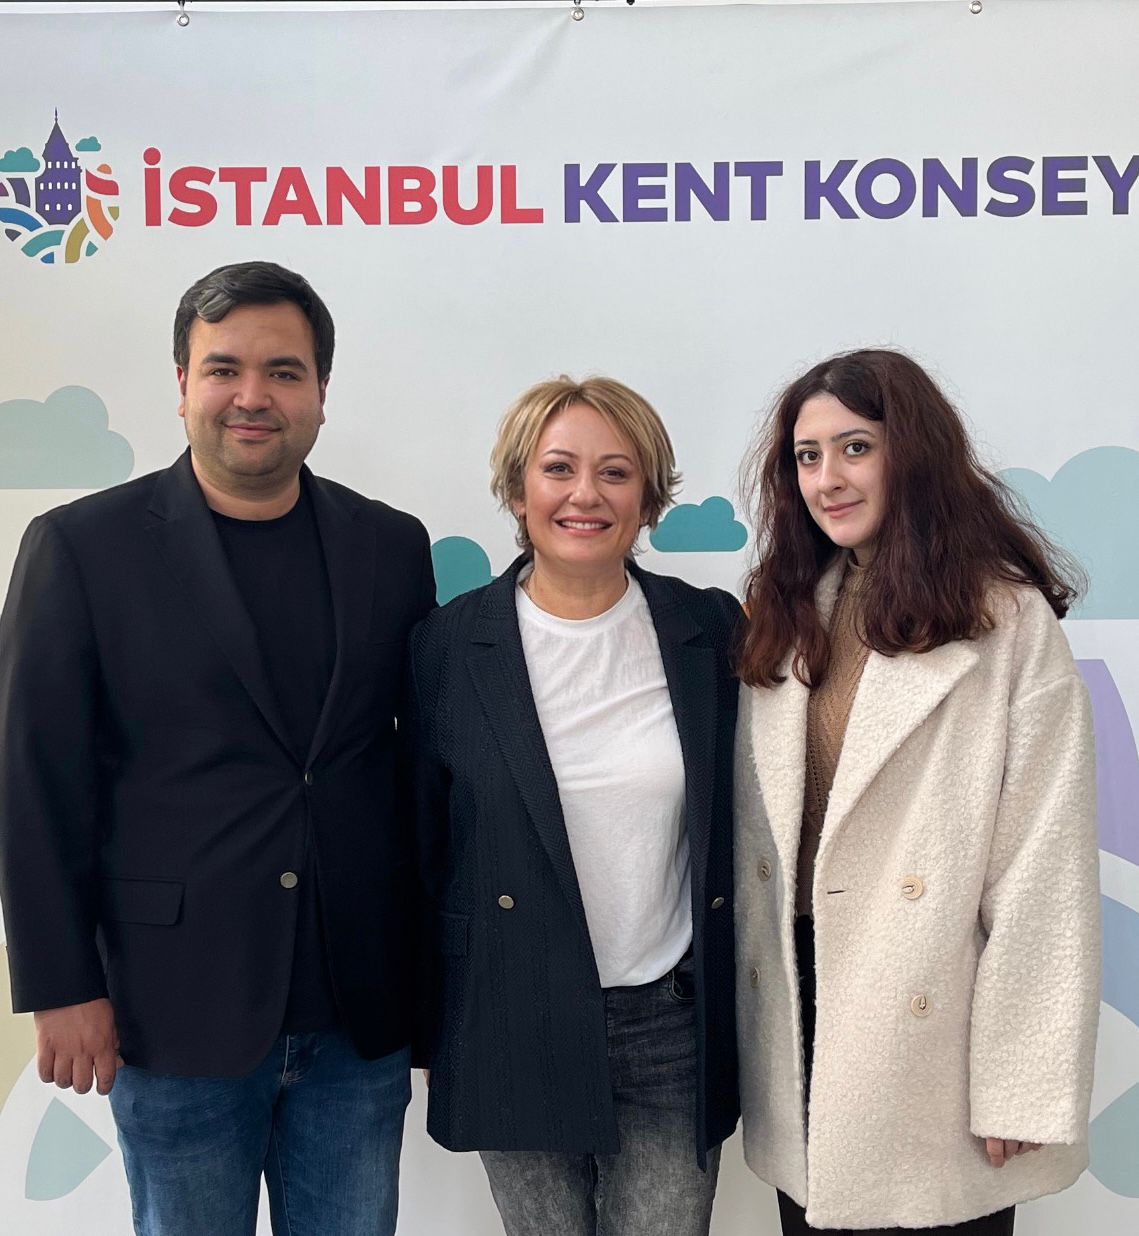 İstanbul Kent Konseyi Genel Sekreteri Rasim Şişman ile bir araya geldik.